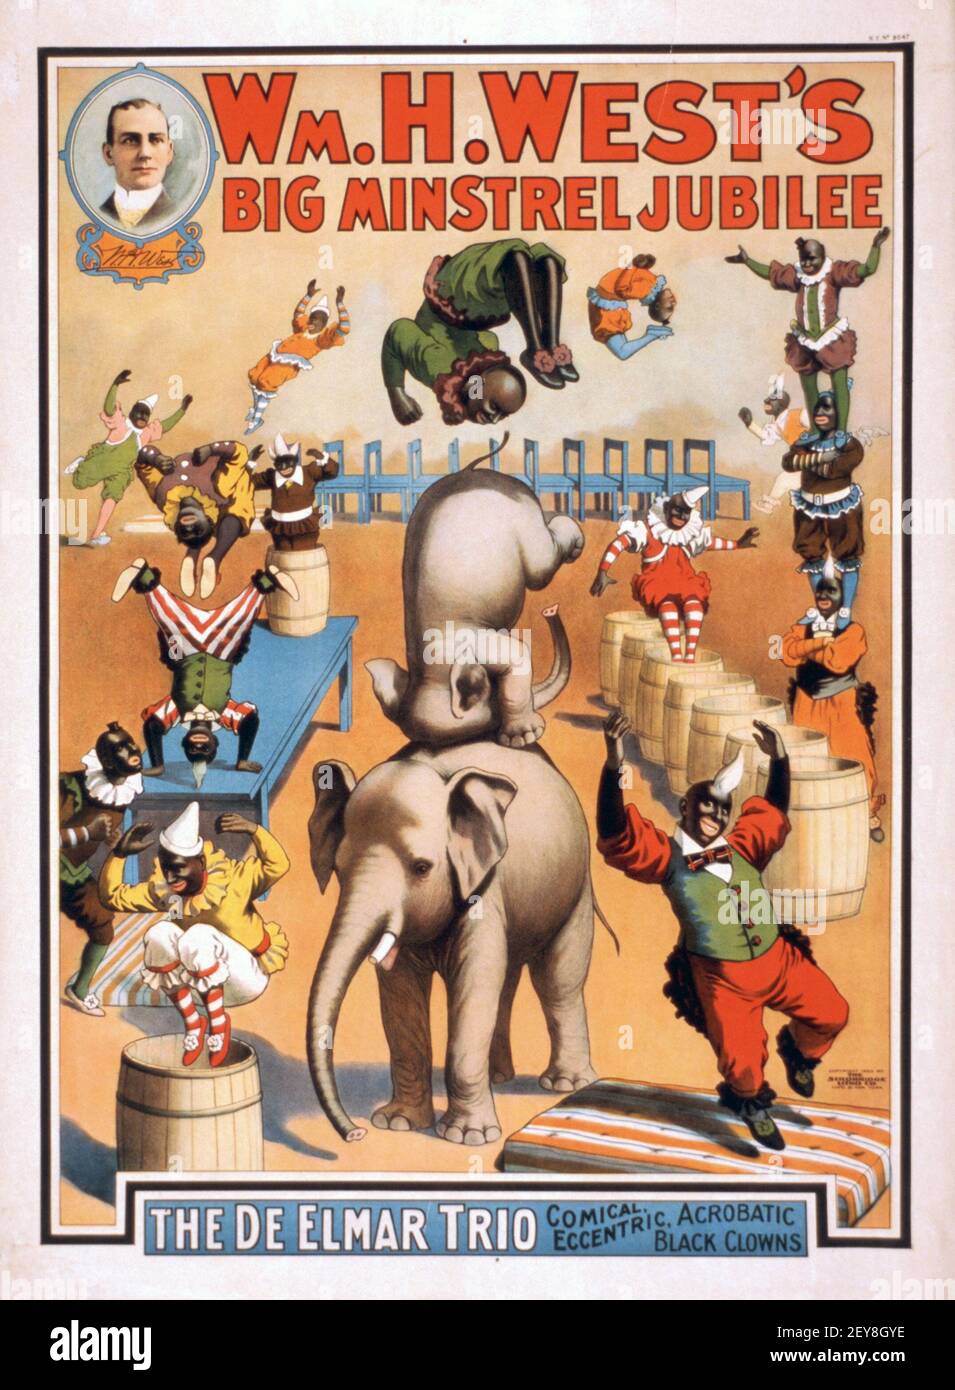 Wm. H. Wests großes Minstrel Jubilee. Klassisches Zirkus-Poster, alt und Vintage-Stil. Feat. afro-amerikaner, Elefanten und Akrobaten. Stockfoto